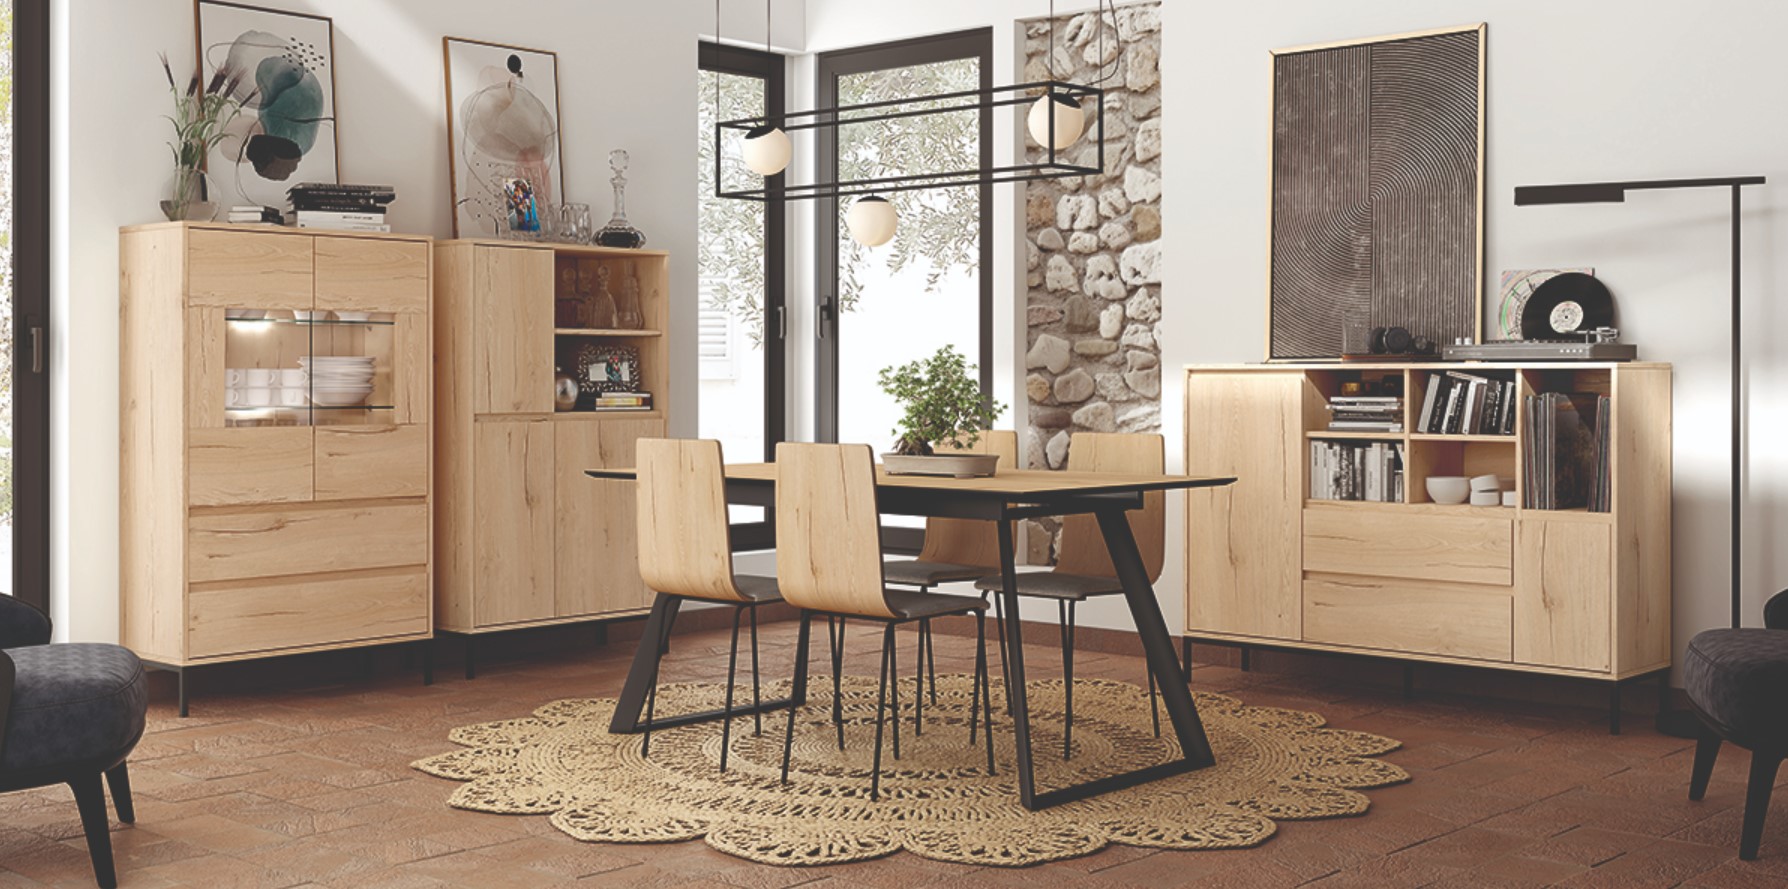 Detalles Merino estudio diseño muebles cocina en Granada electrodomésticos las mejores marcas al mejor precio cocinas Aixa